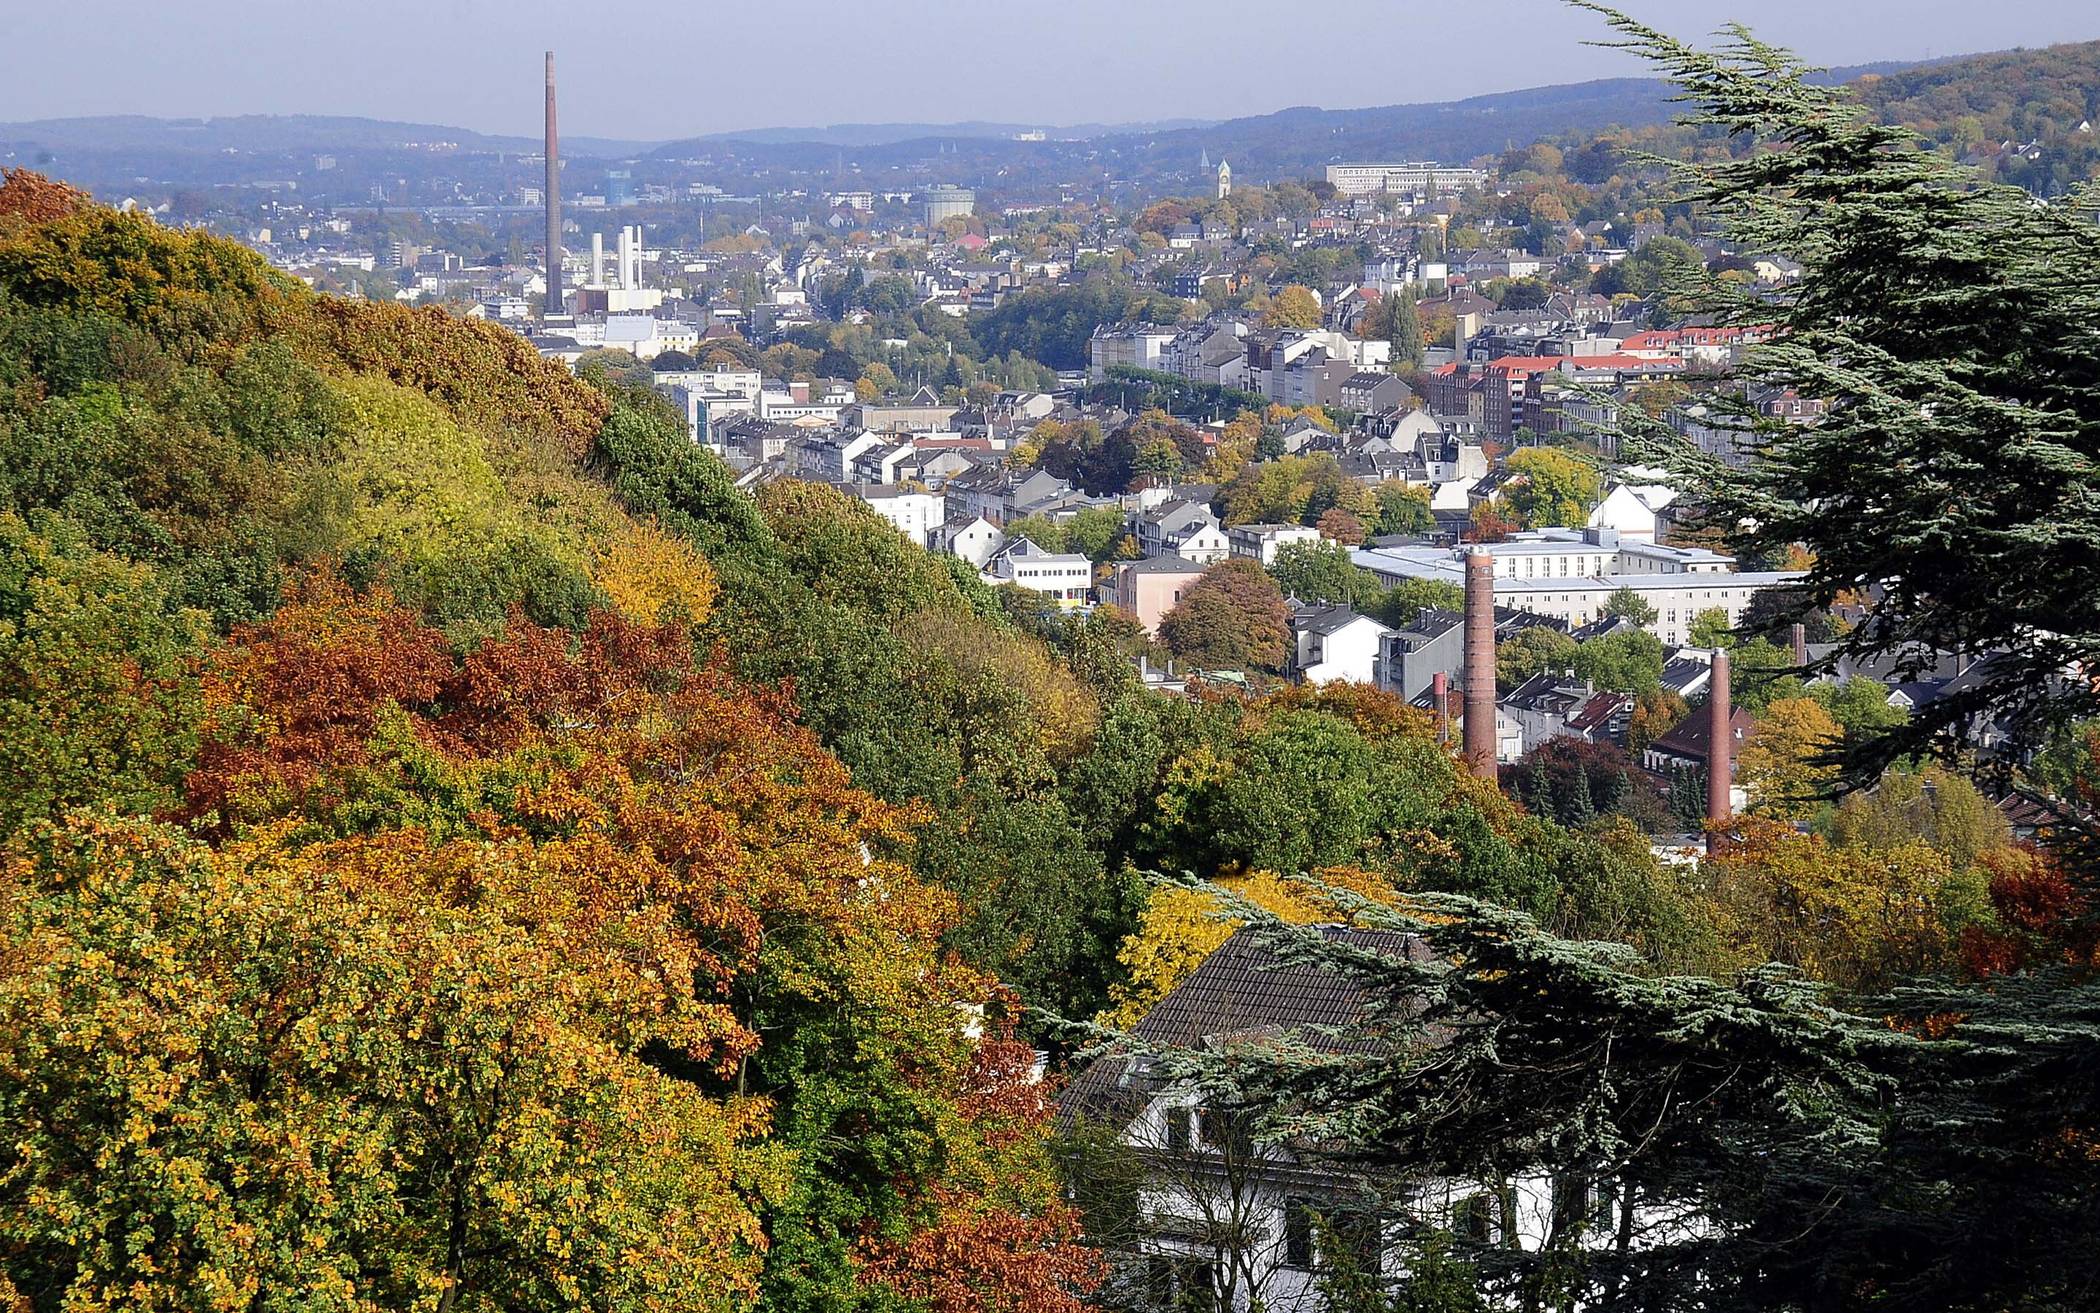  Blick über das herbstliche Wuppertal. 